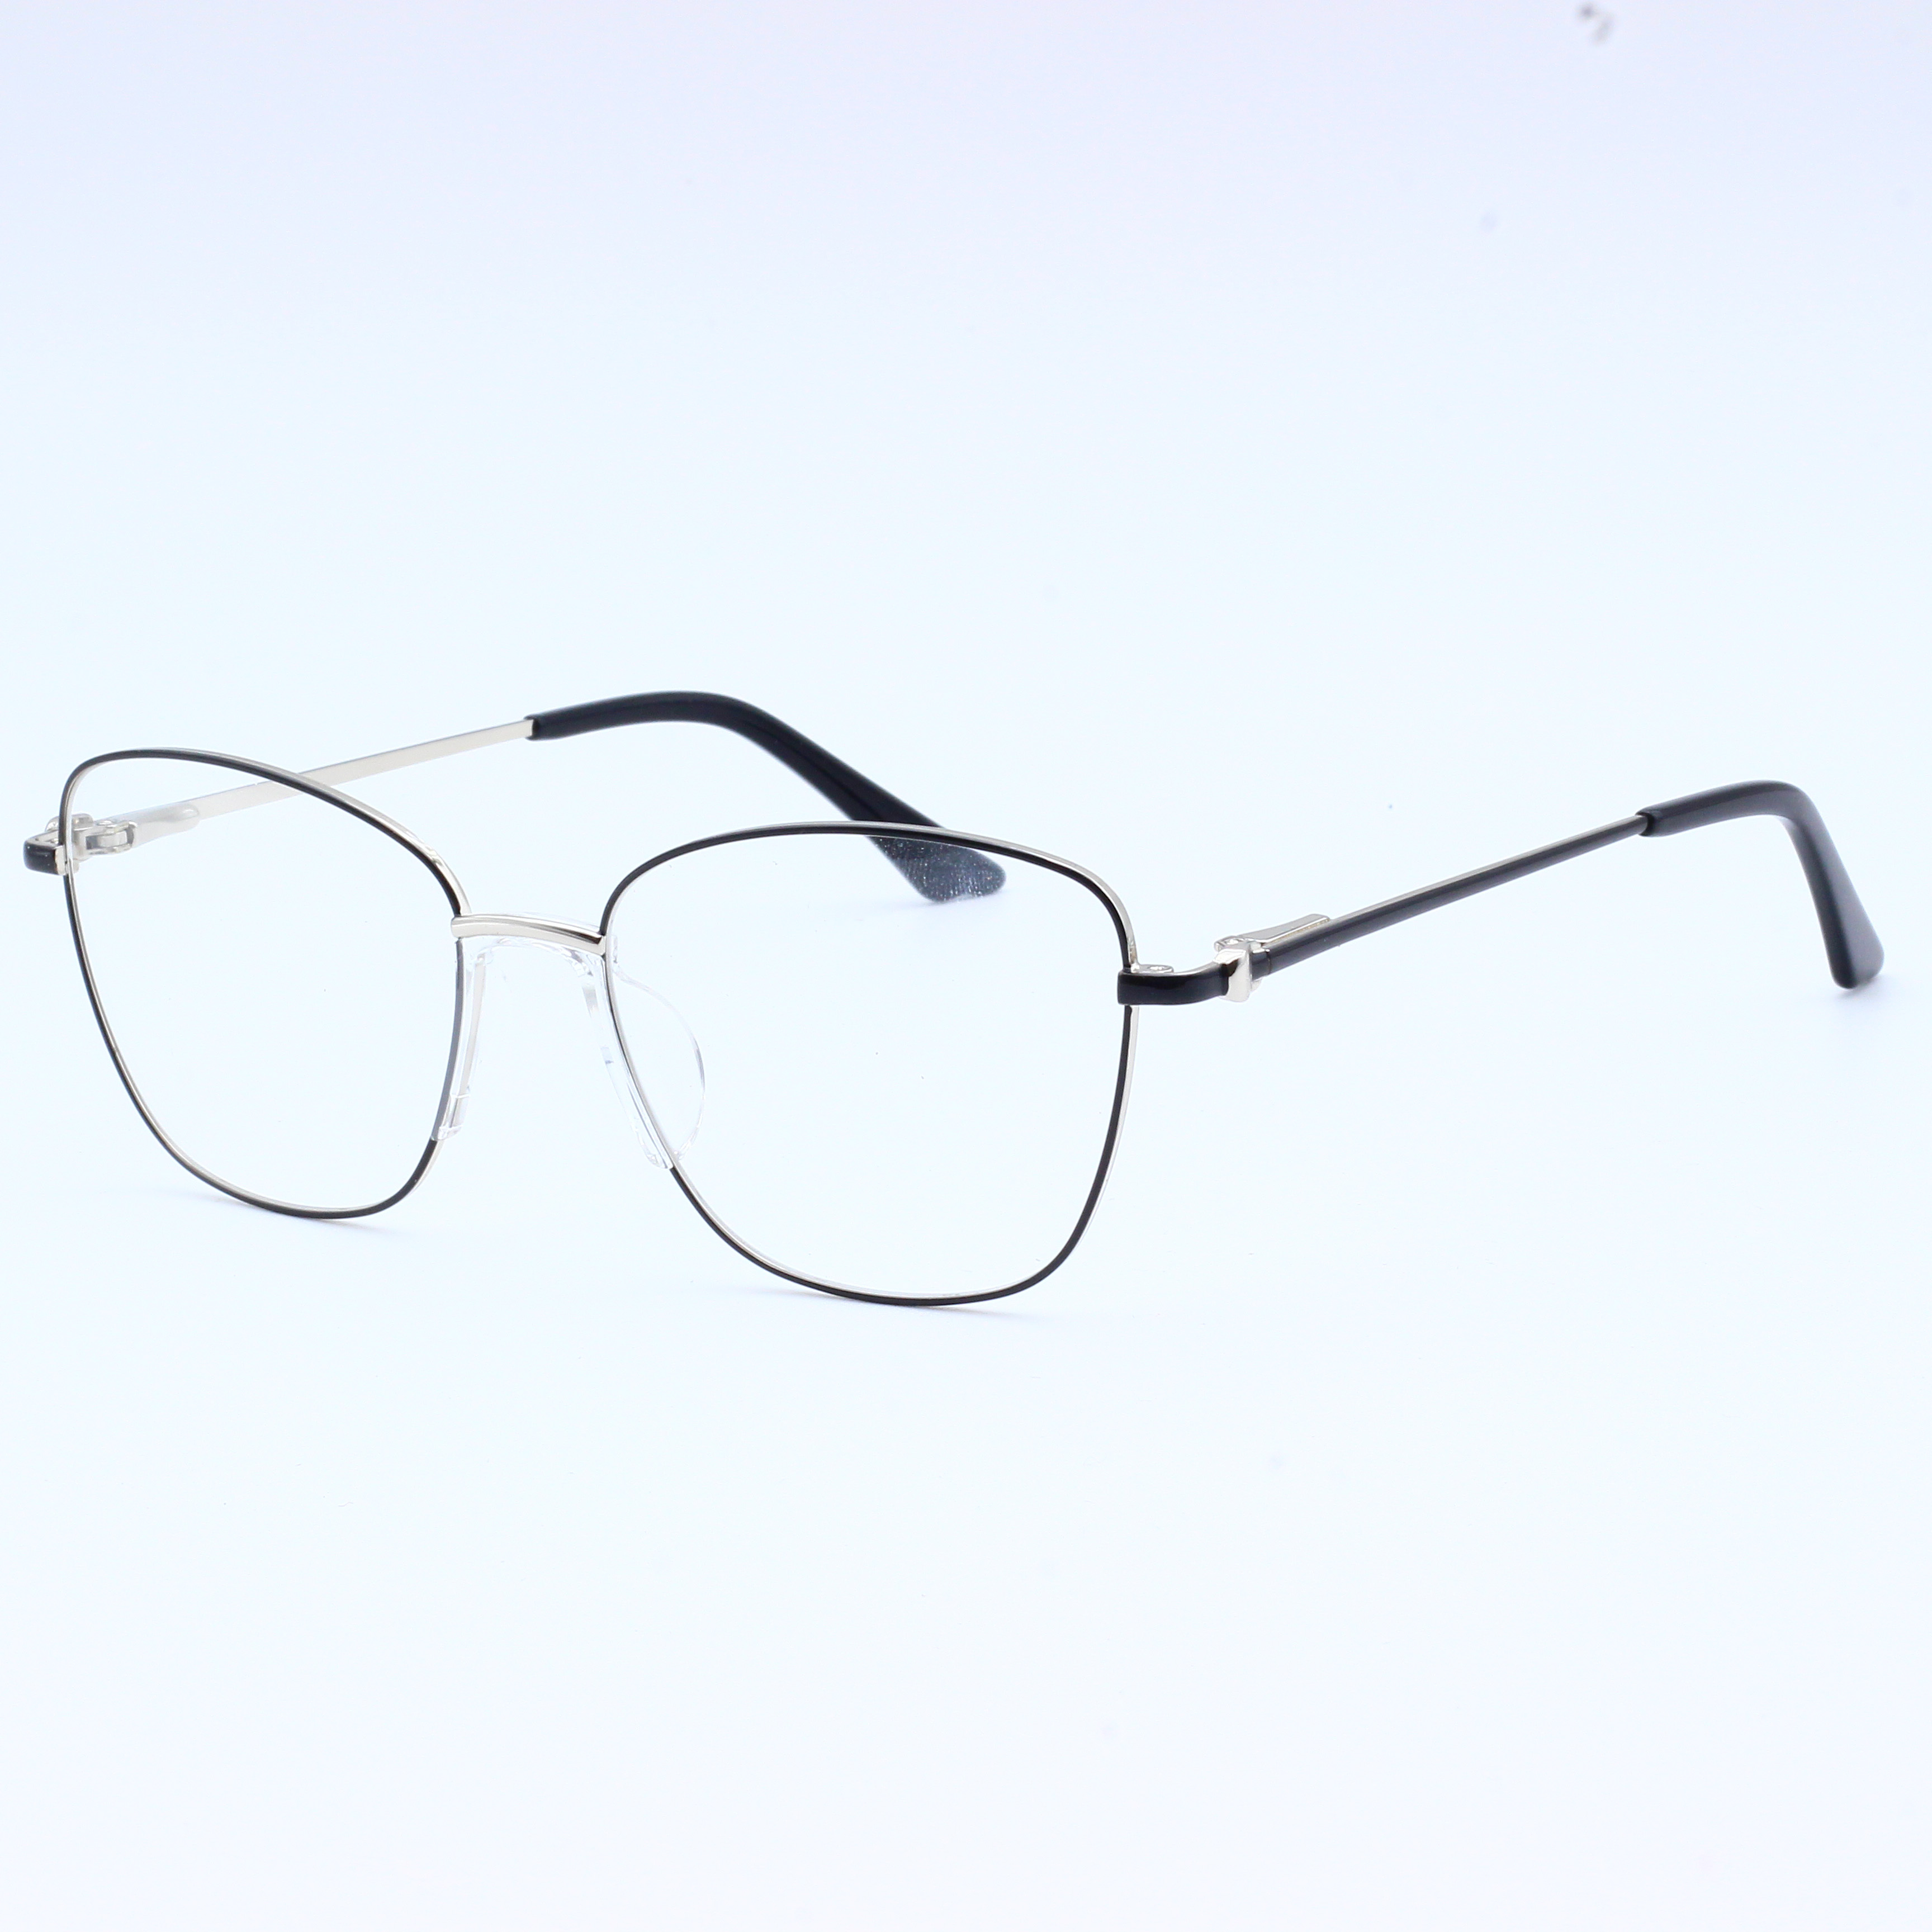 Anti Blue Rays Glasses Spring Leg Eyeglasses Optical Frames (5)